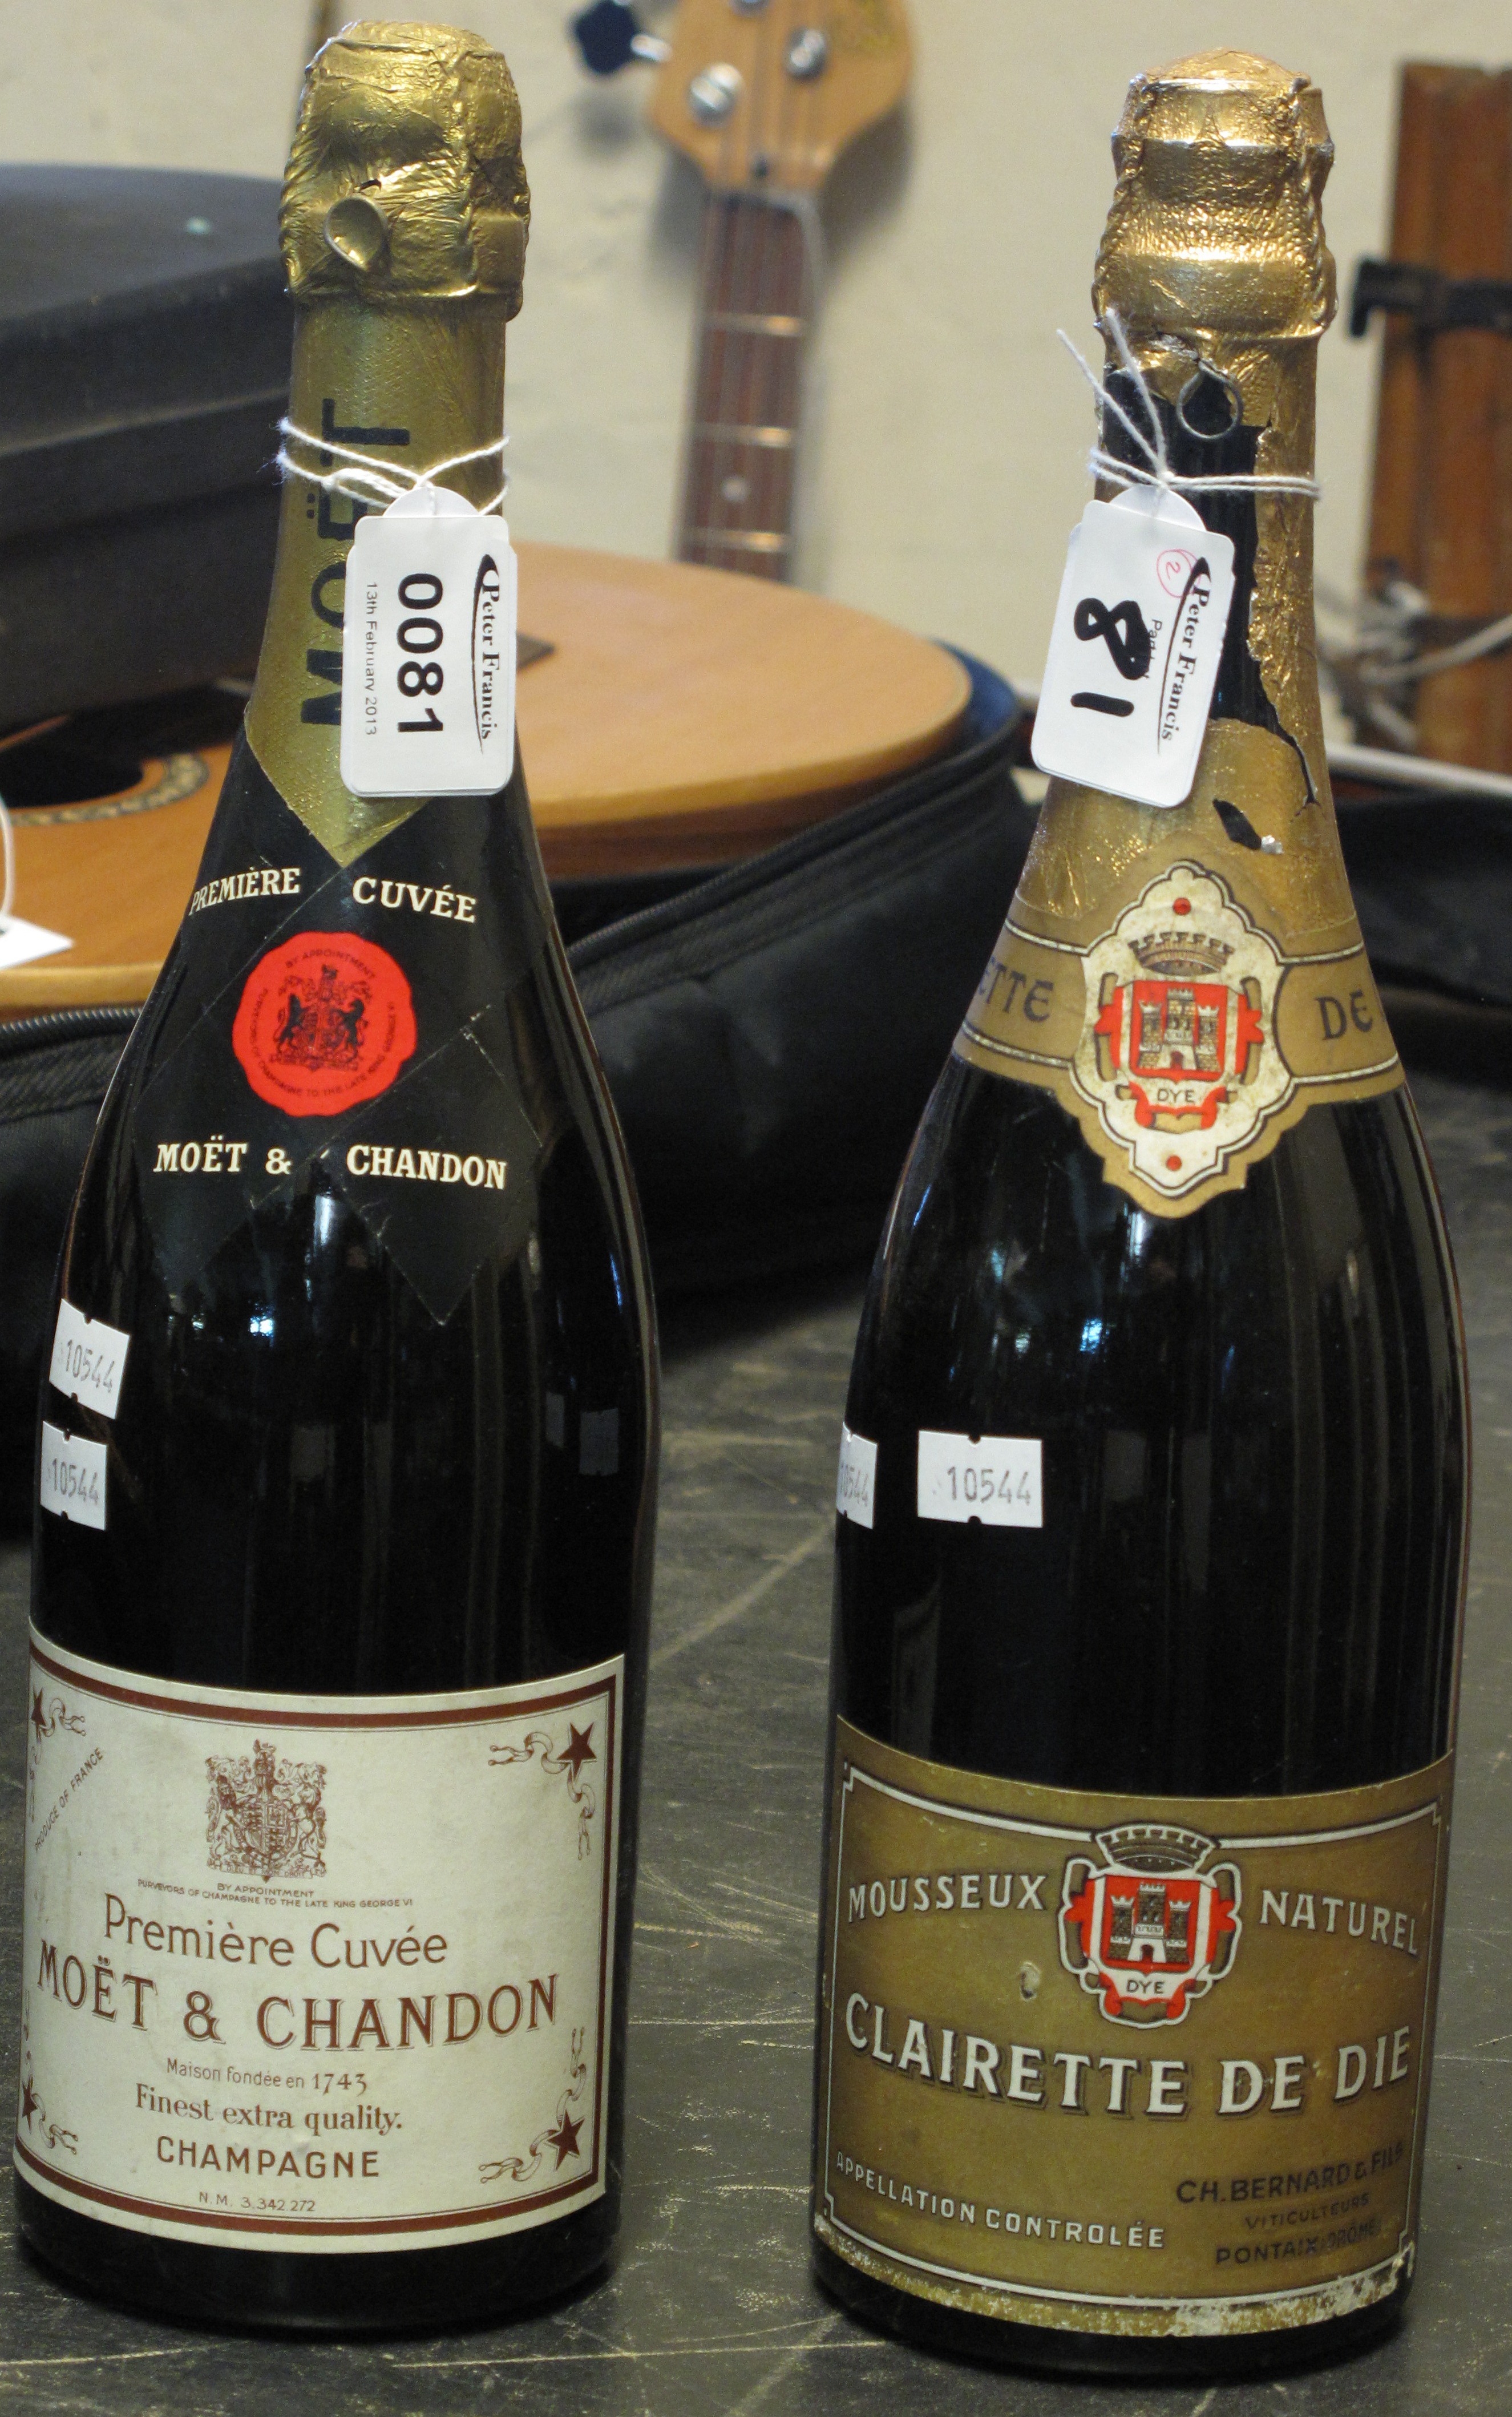 One bottle Moet & Chandon Champagne & one bottle Clairette De Die. (2).